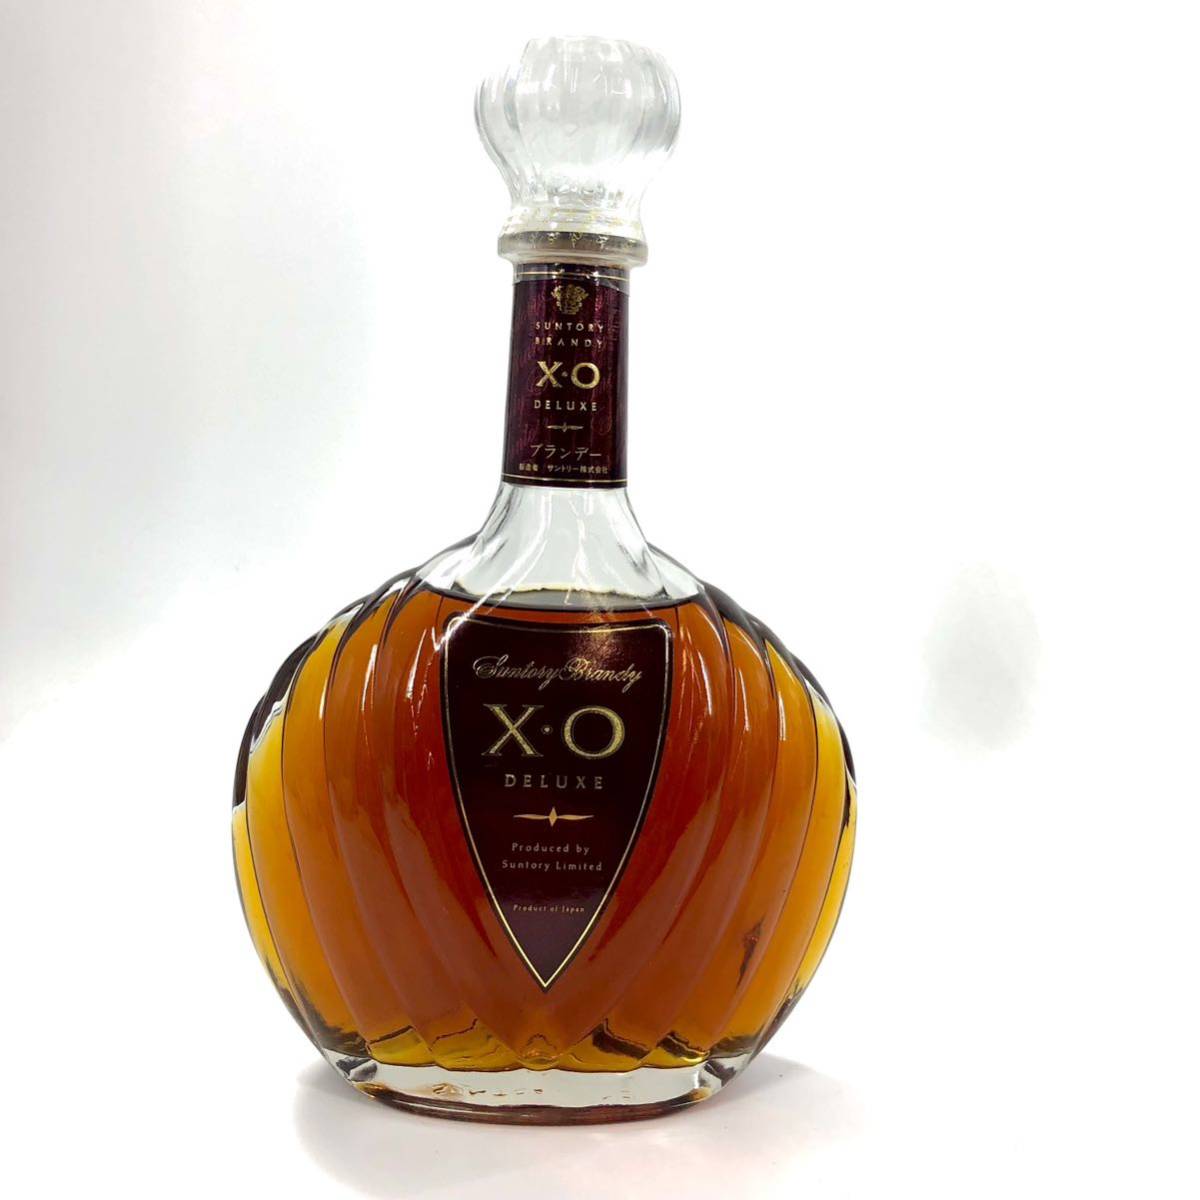 R-103 ブランデー 古酒 XO マーテルスプリーム シャボー アルマニャック コニャック ブランデーまとめ 箱付き 5本セット 1715年_画像2